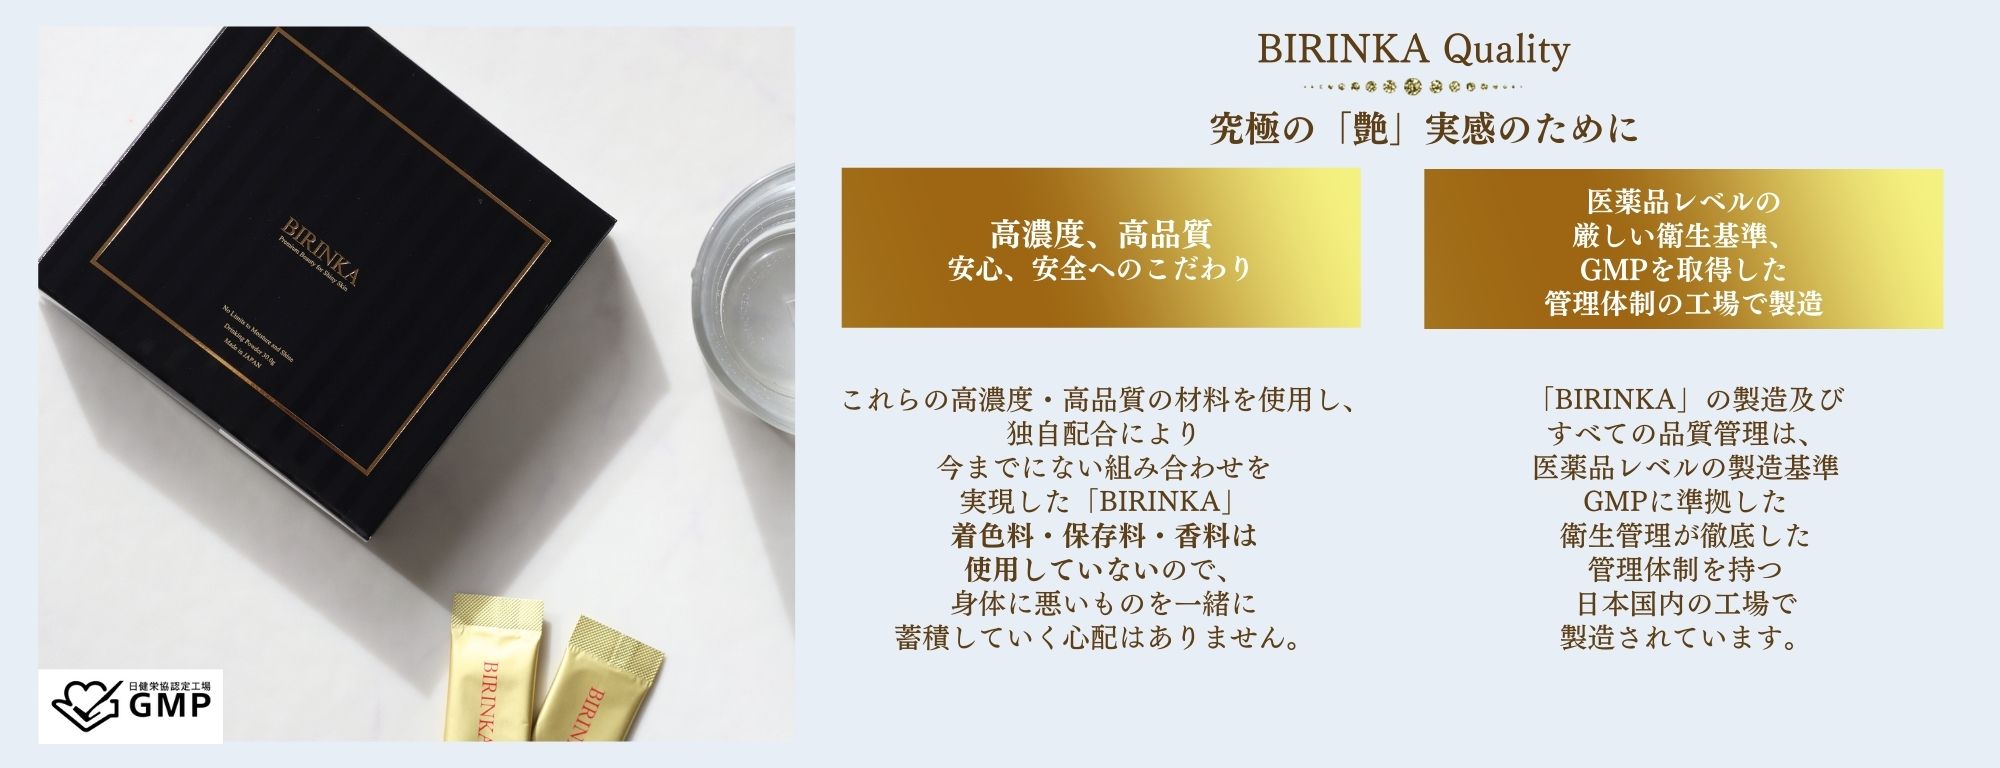 究極の「艶」実感のためにこだわった高濃度・高品質の成分、安心・安全へのこだわり。
BIRINKA美凛華は、GMPを取得した管理体制の日本国内の工場で製造されています。